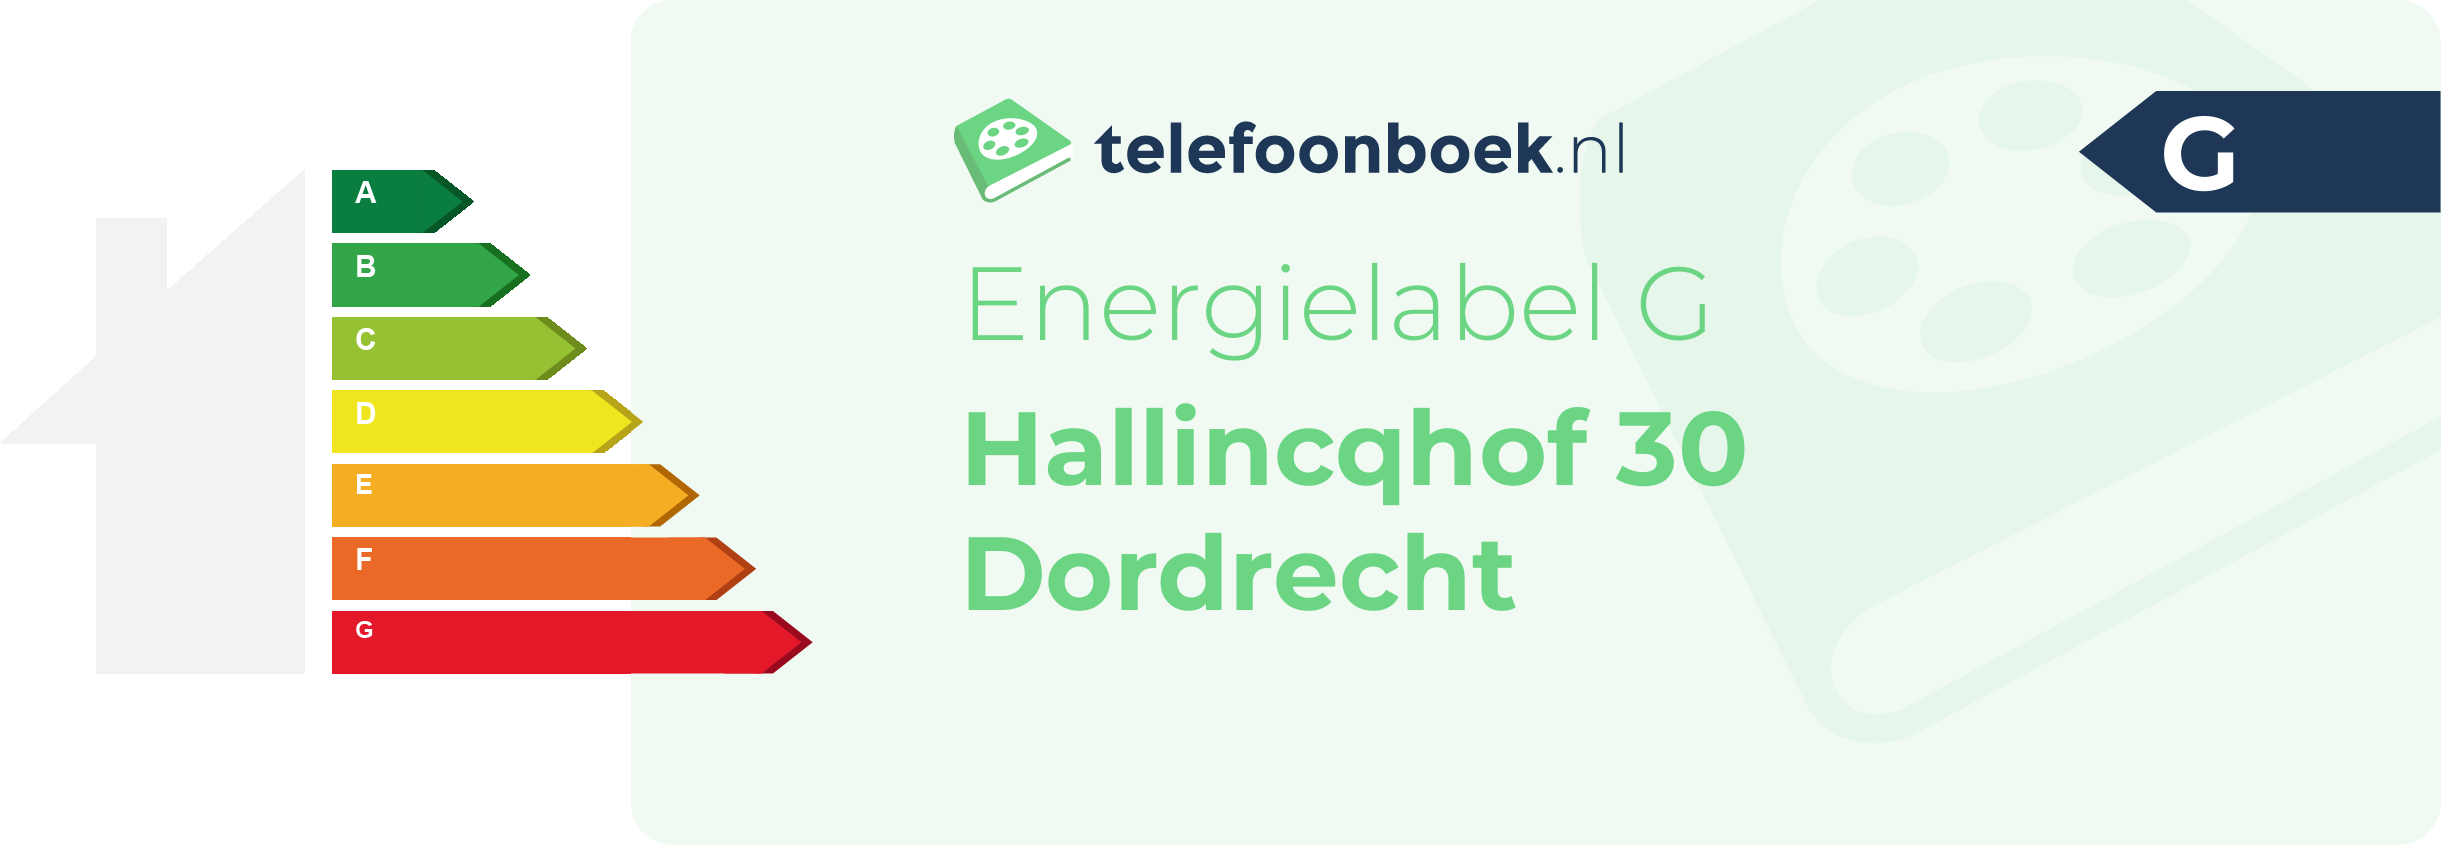 Energielabel Hallincqhof 30 Dordrecht